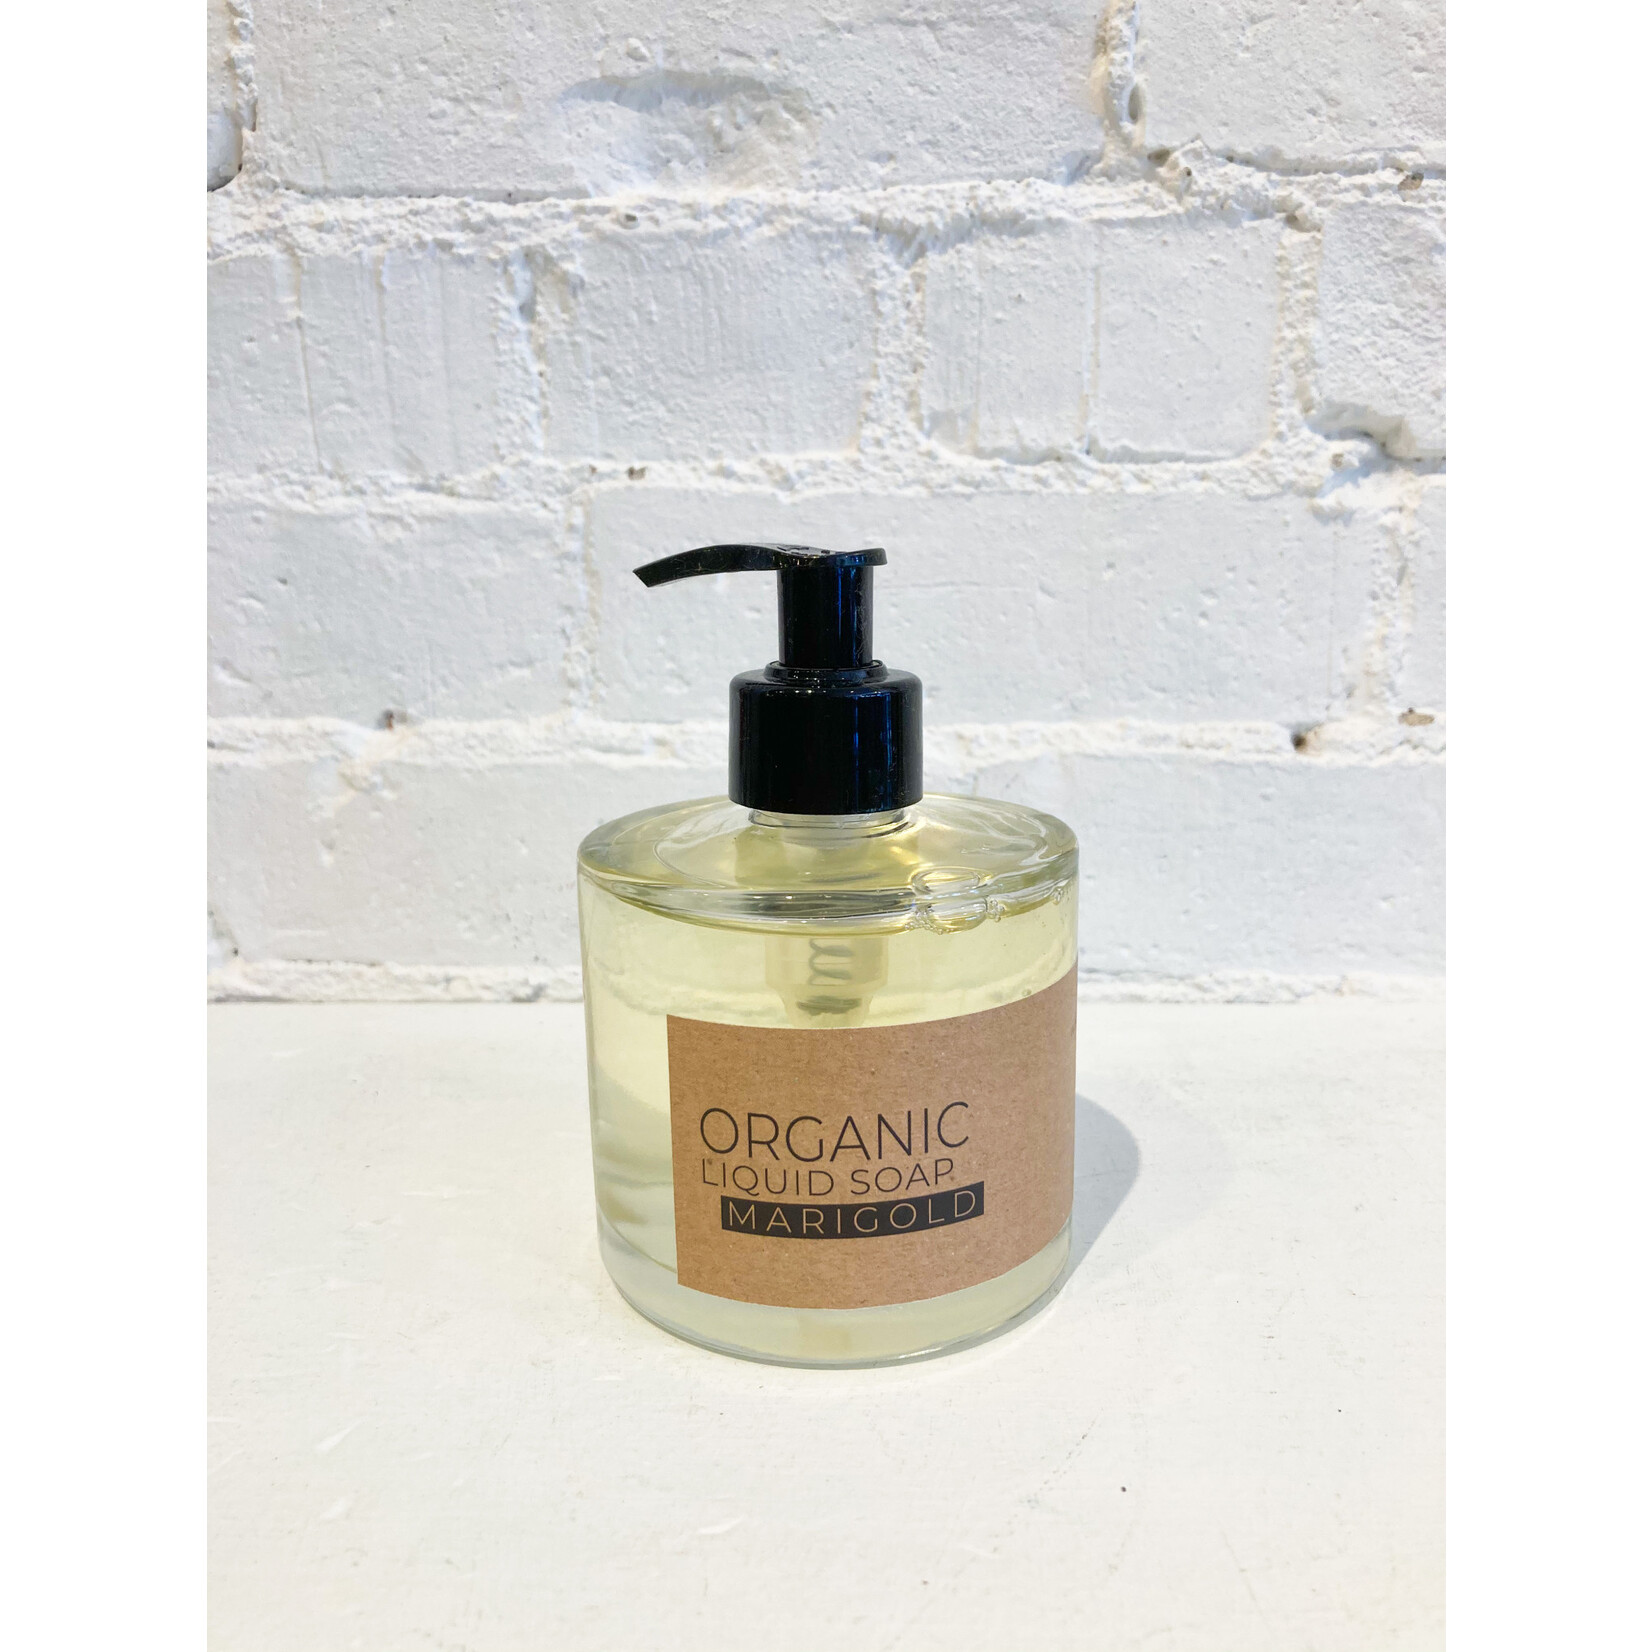 The Munio Organic Liquid Soap- Marigold